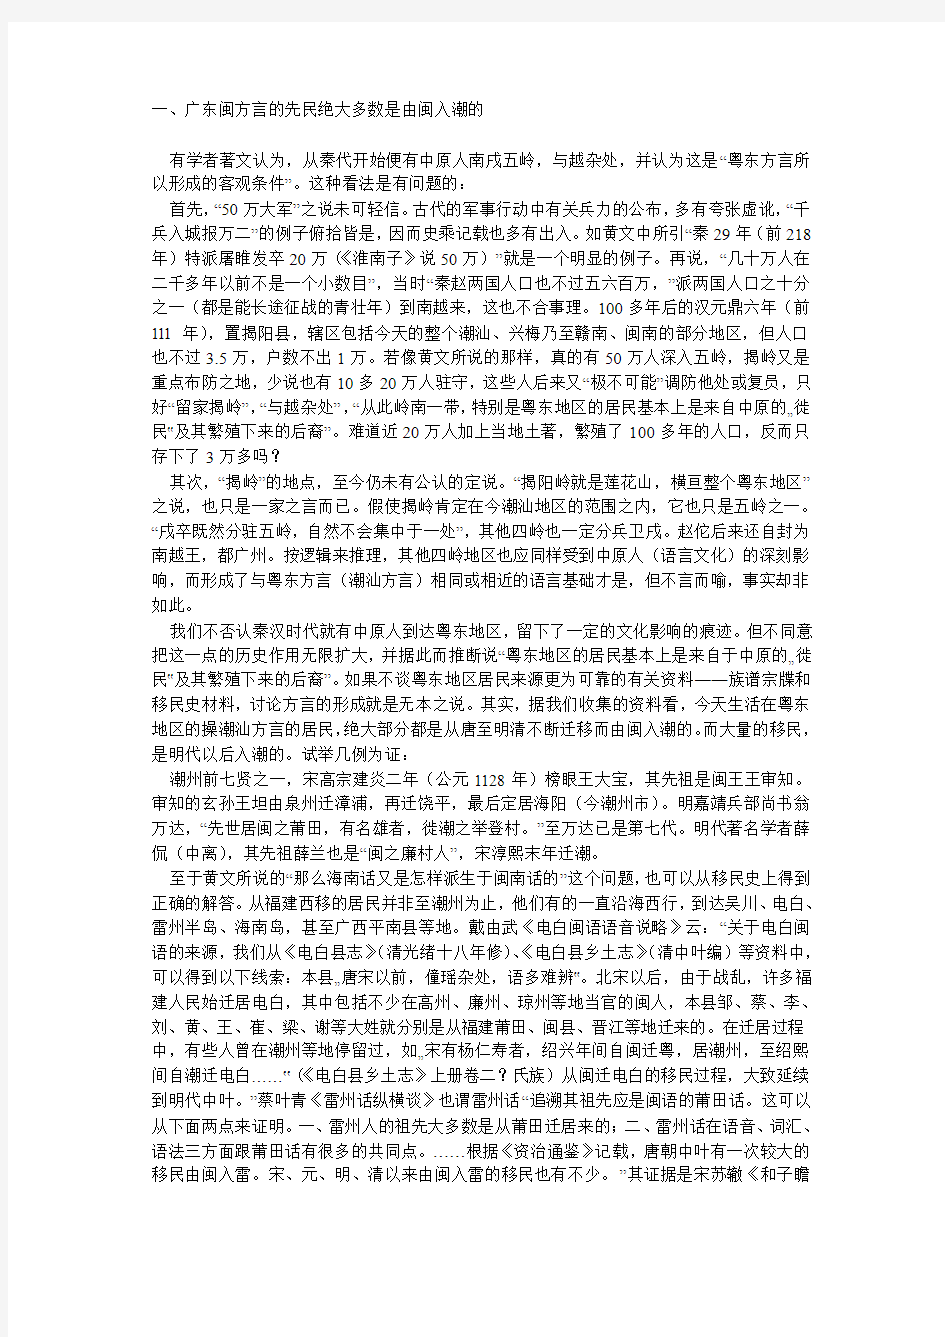 广东闽方言与福建闽语的关系 作者： 林伦伦先生